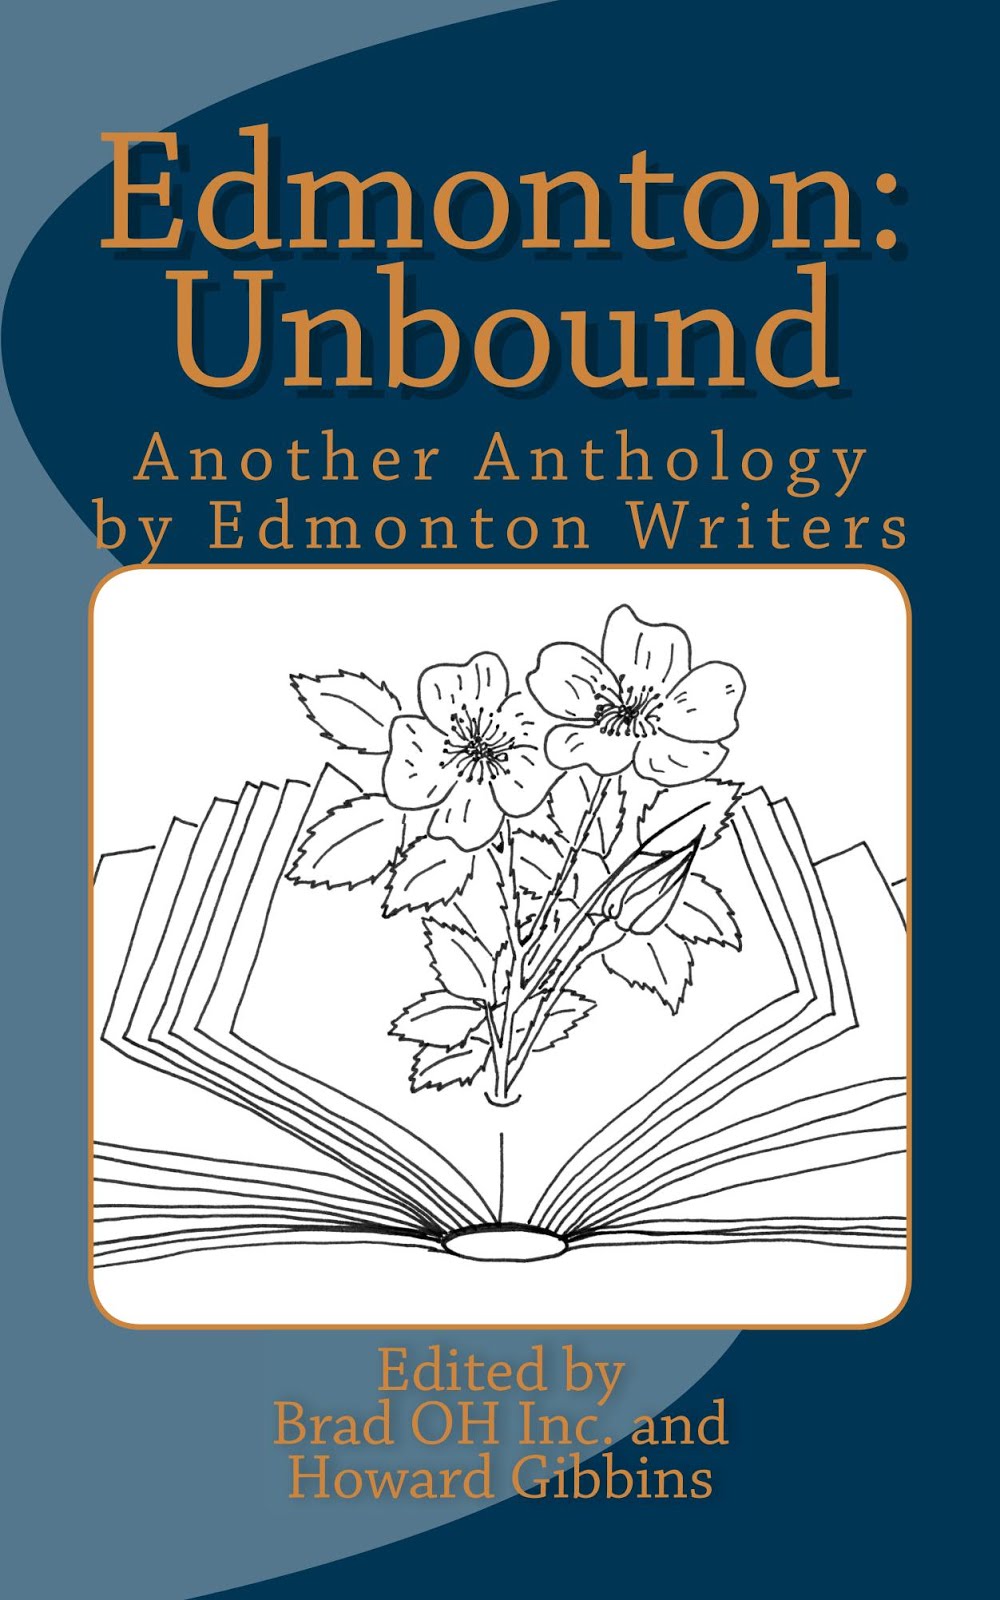 Authors of "Edmonton: Unbound"